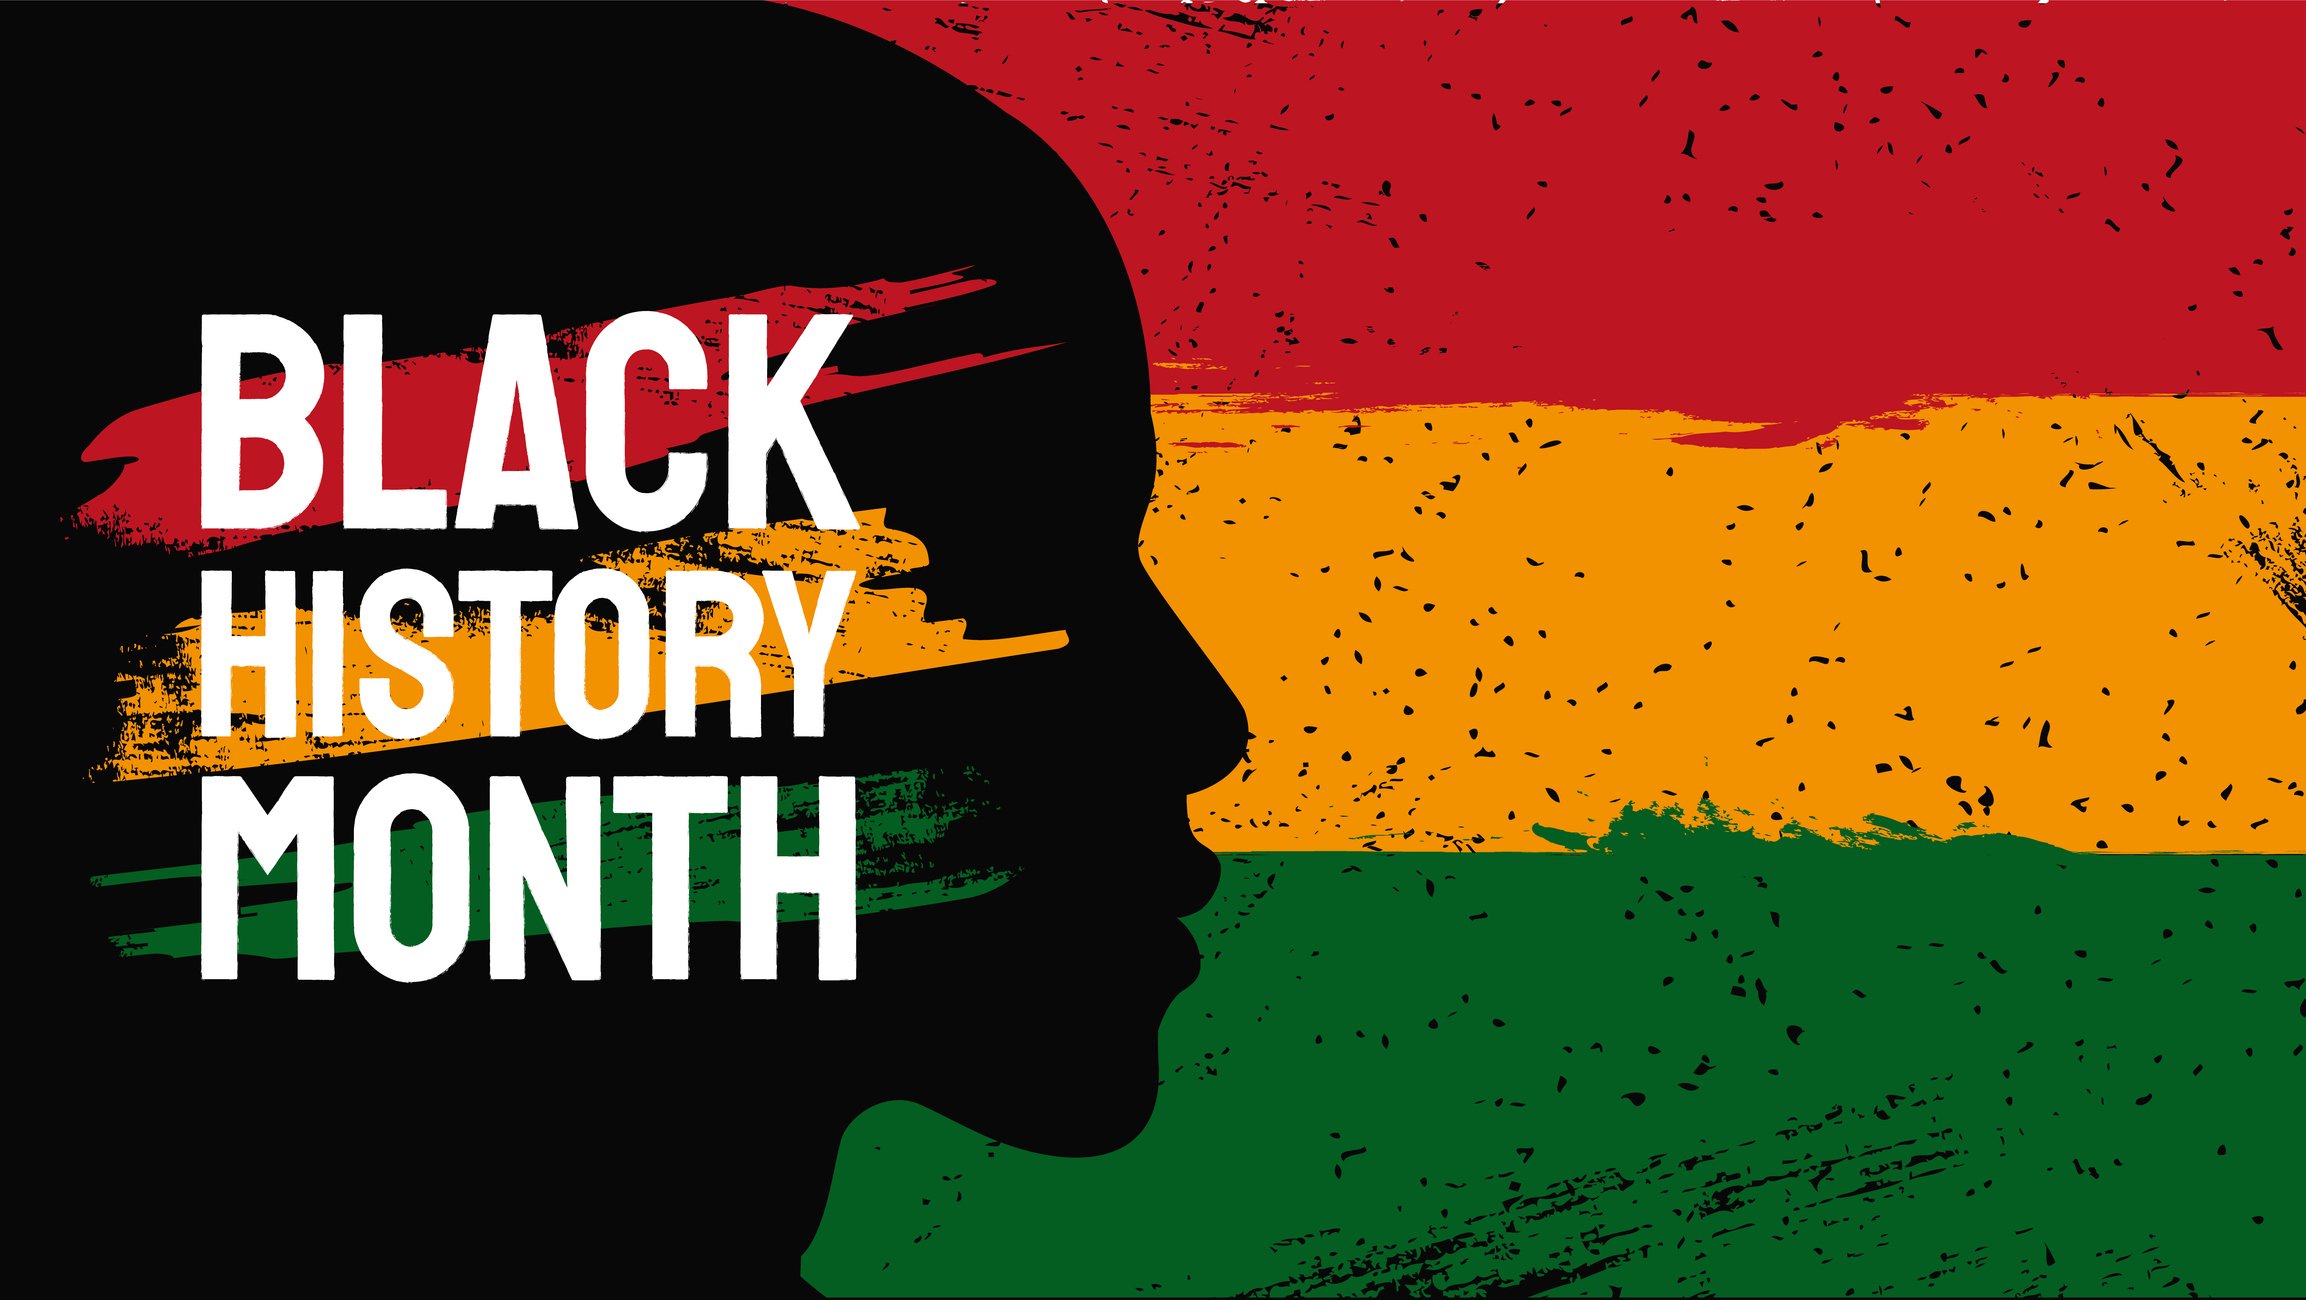 Khám phá những hình nền Zoom cho Black History Month được lấy cảm hứng từ San Francisco LightHouse for the Blind. Hãy cùng nhau tìm hiểu về lịch sử đen và sử dụng những hình ảnh này để tạo cảm hứng cho cuộc trò chuyện của bạn trên Zoom.